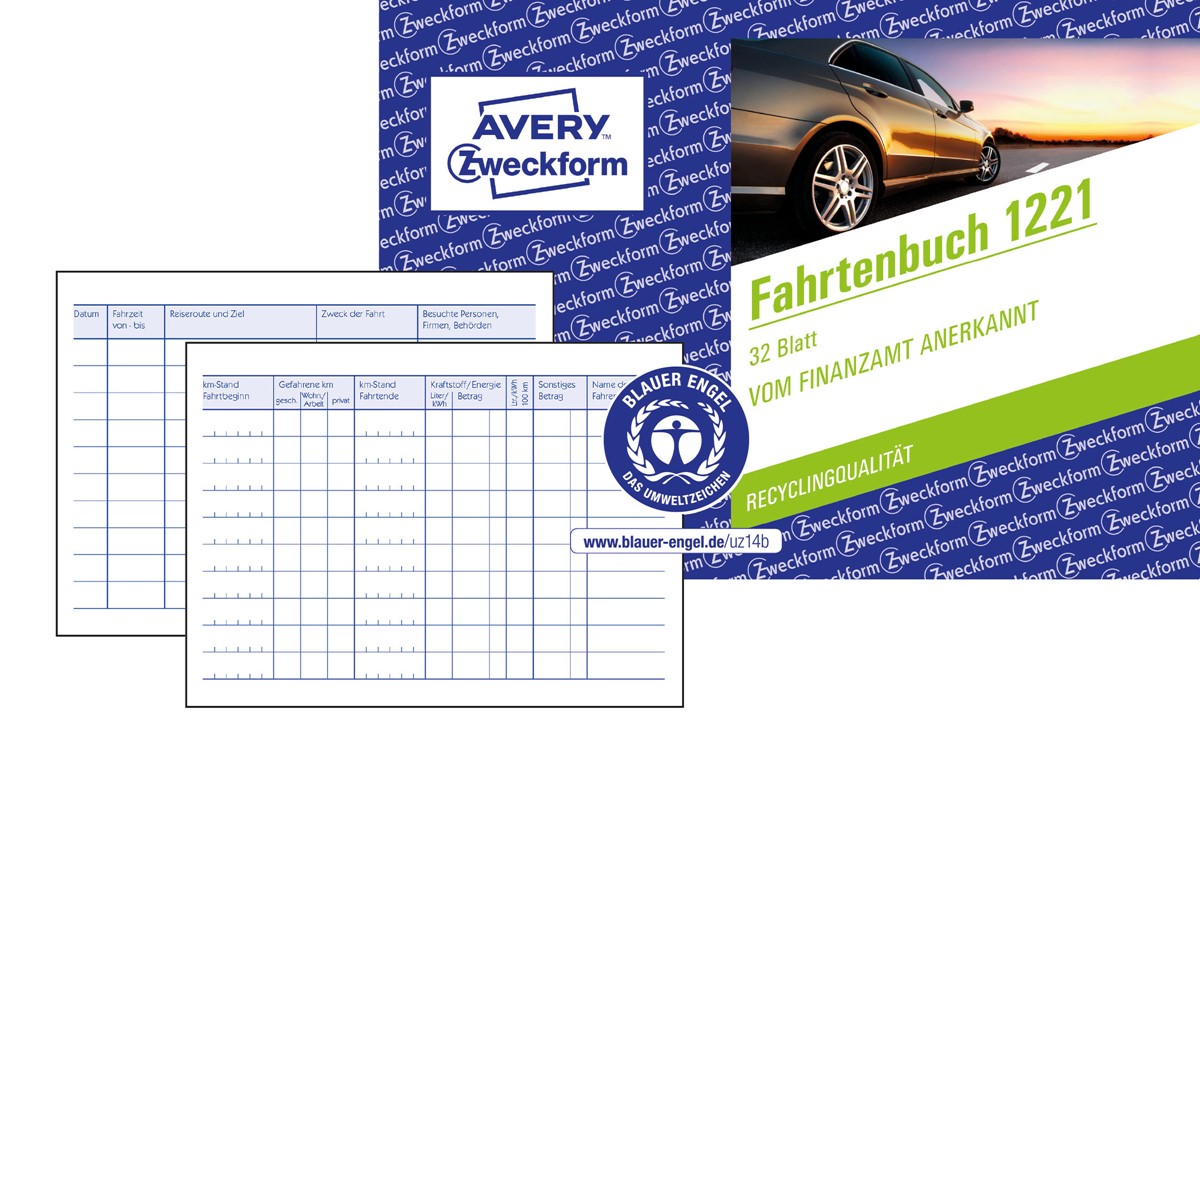 Avery Zweckform 1221 Fahrtenbuch für PKW, A6 quer, weiß